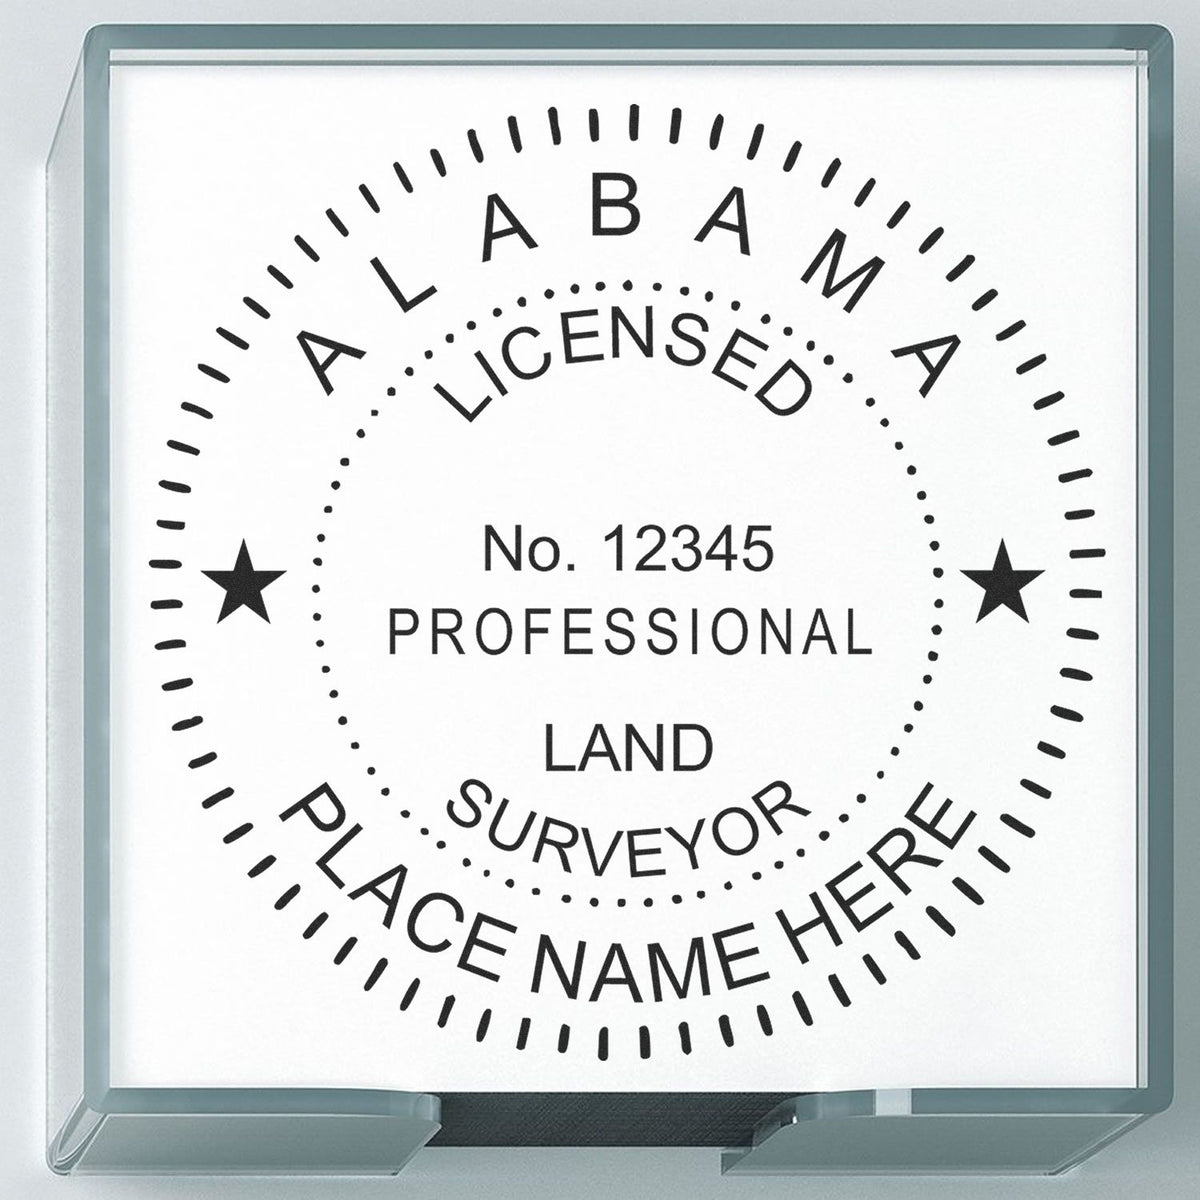 Alabama Land Surveyor Seal Stamp In Use Photo